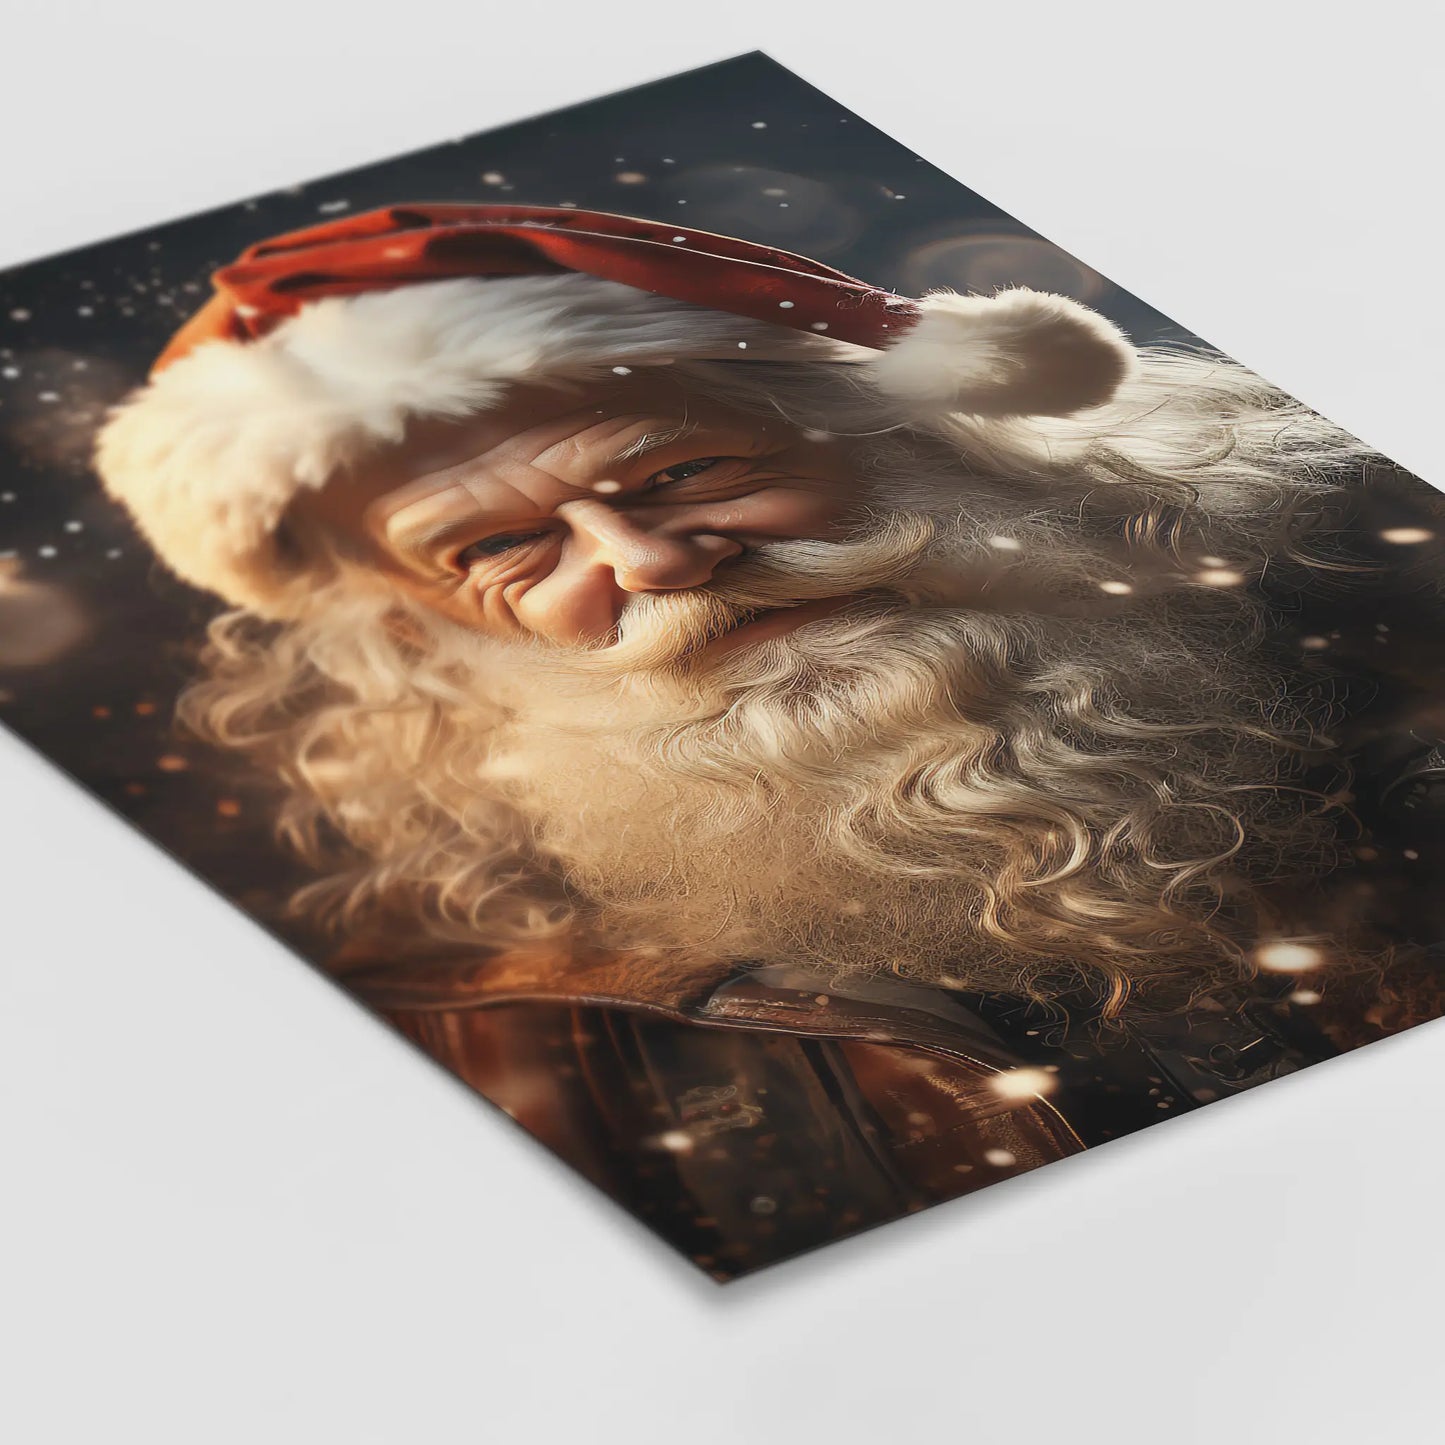 Der Weihnachtsmann No 1 - Weihnachten - Poster